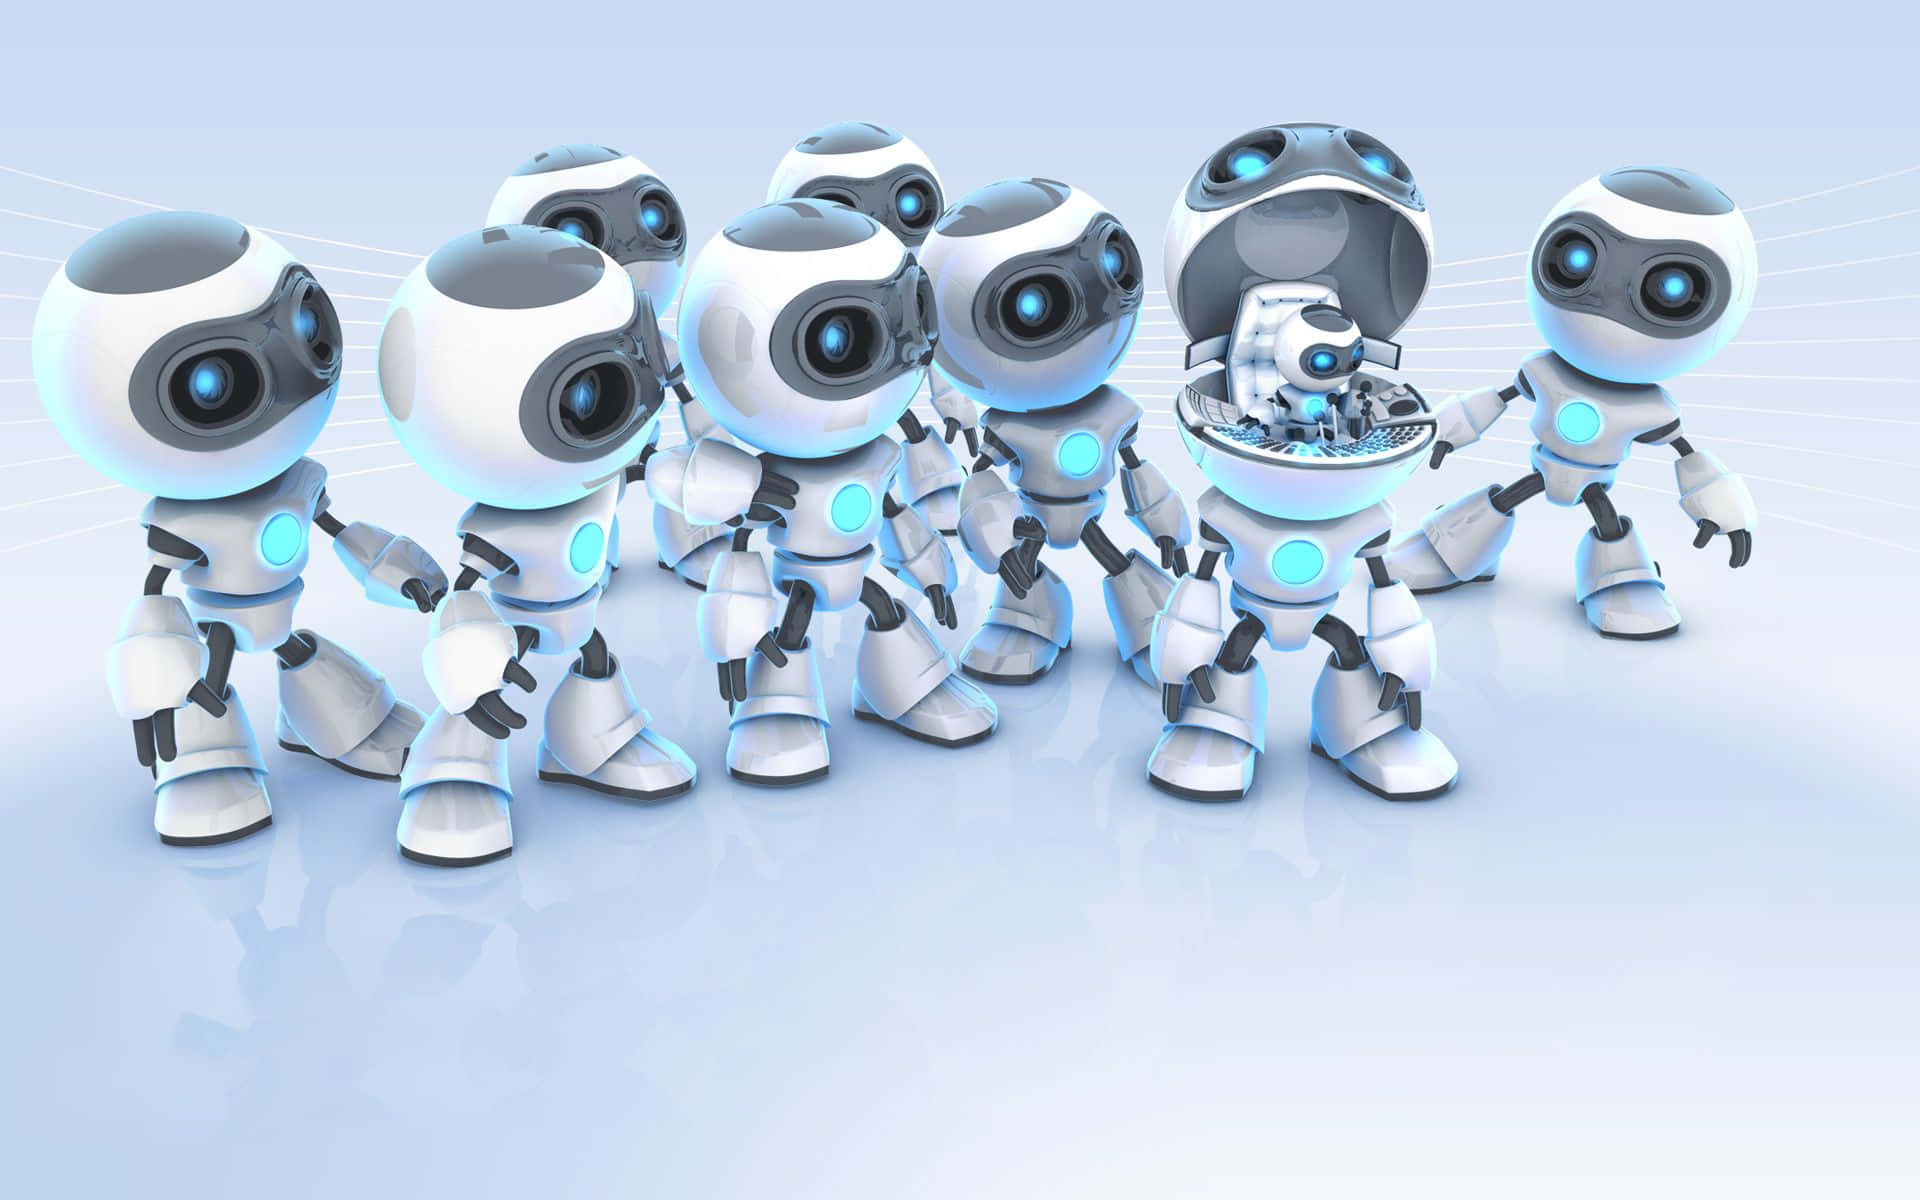 Fremtidener Her - En Robot, Der Søger At Ændre Vores Liv.